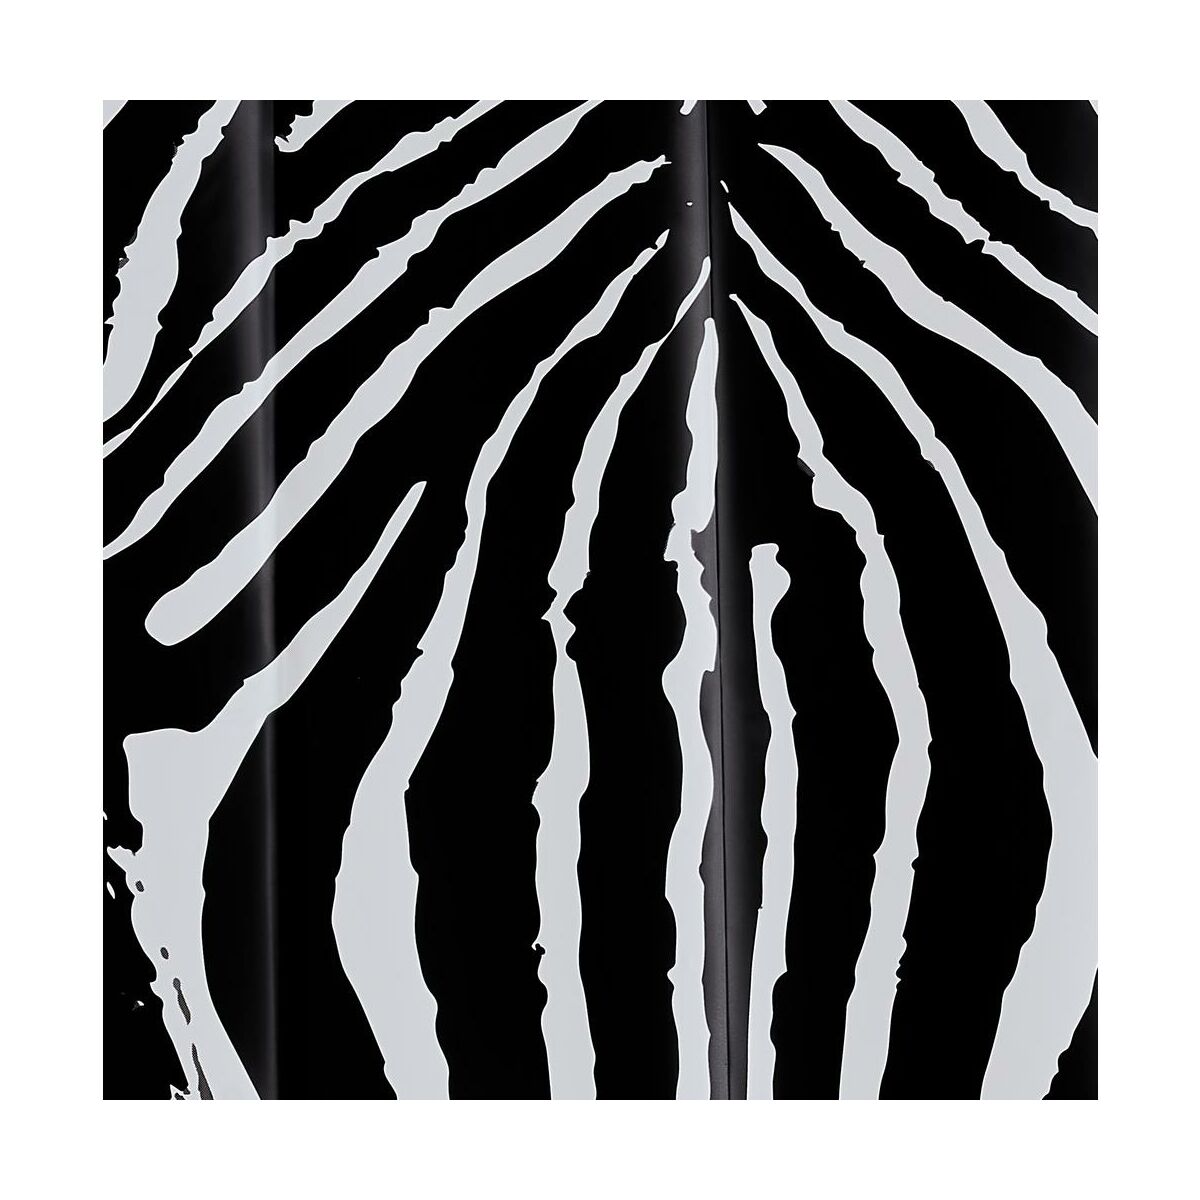 Zasłonka prysznicowa Zebra 180 X 200 cm Sealskin